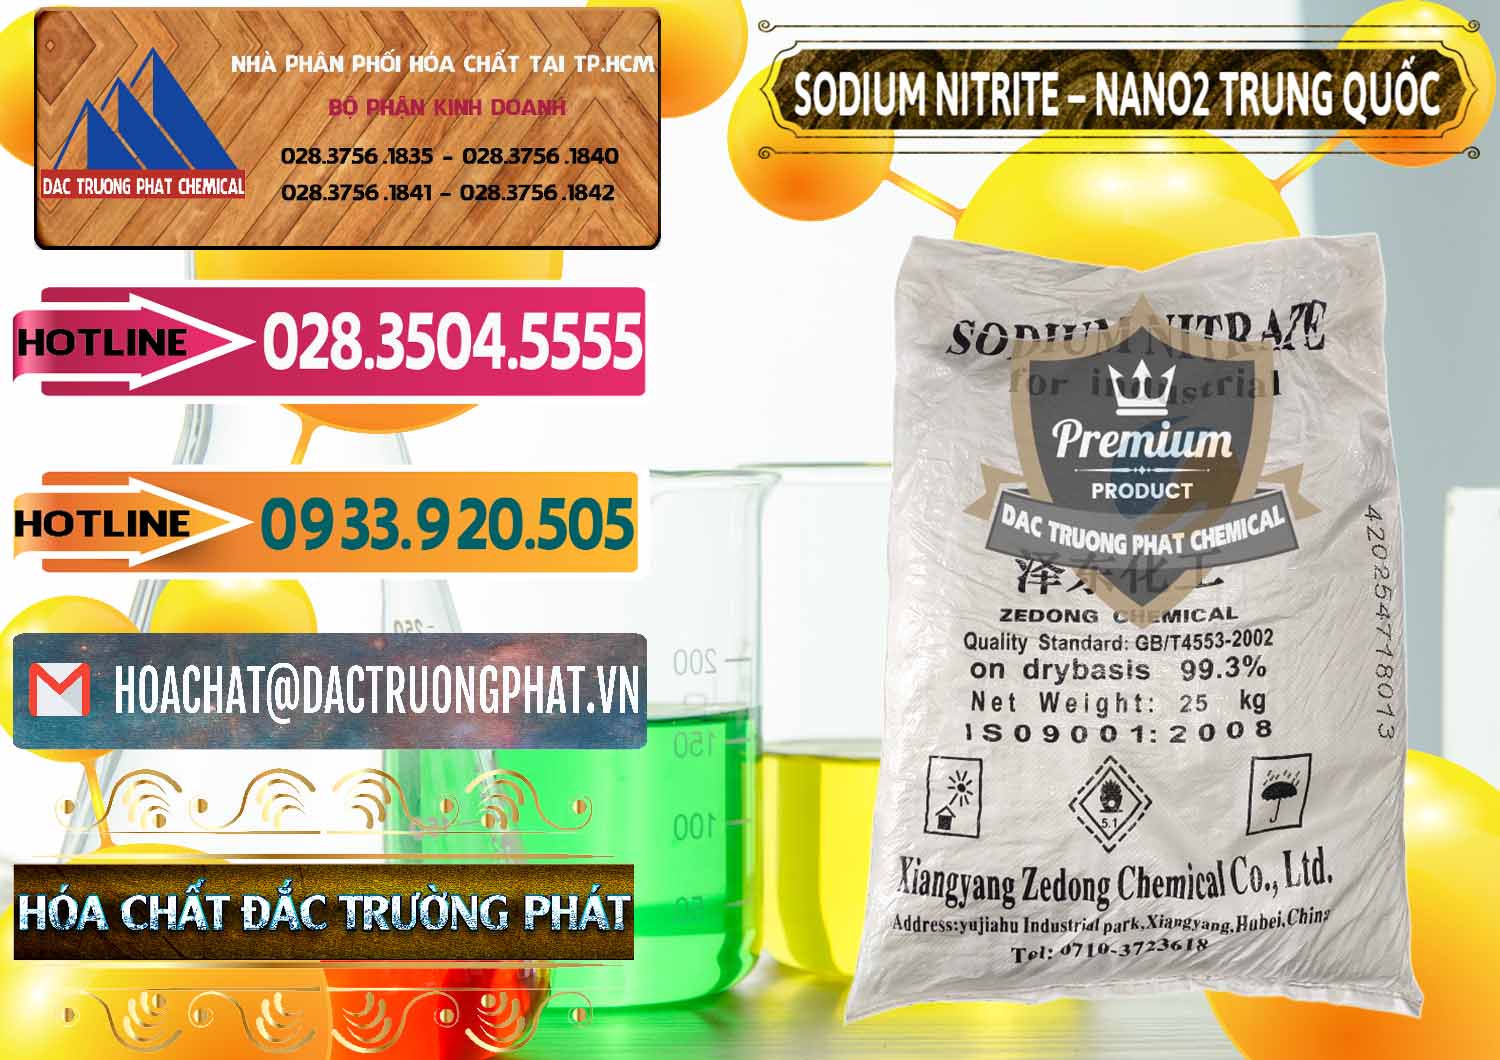 Chuyên bán ( cung ứng ) Sodium Nitrite - NANO2 Zedong Trung Quốc China - 0149 - Cty phân phối và bán hóa chất tại TP.HCM - dactruongphat.vn